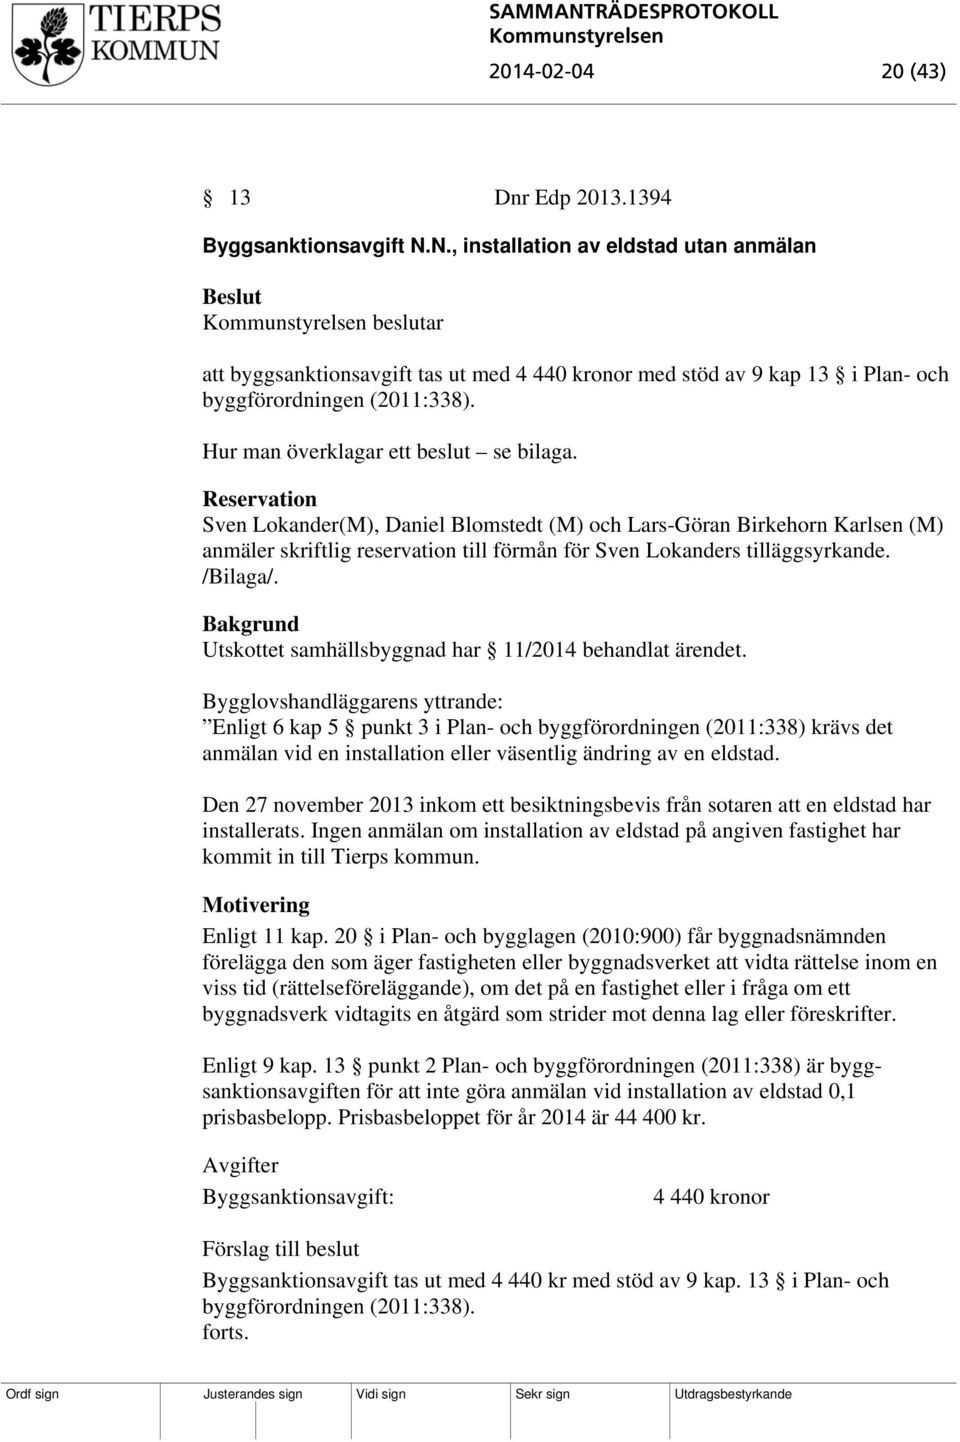 Reservation Sven Lokander(M), Daniel Blomstedt (M) och Lars-Göran Birkehorn Karlsen (M) anmäler skriftlig reservation till förmån för Sven Lokanders tilläggsyrkande. /Bilaga/.